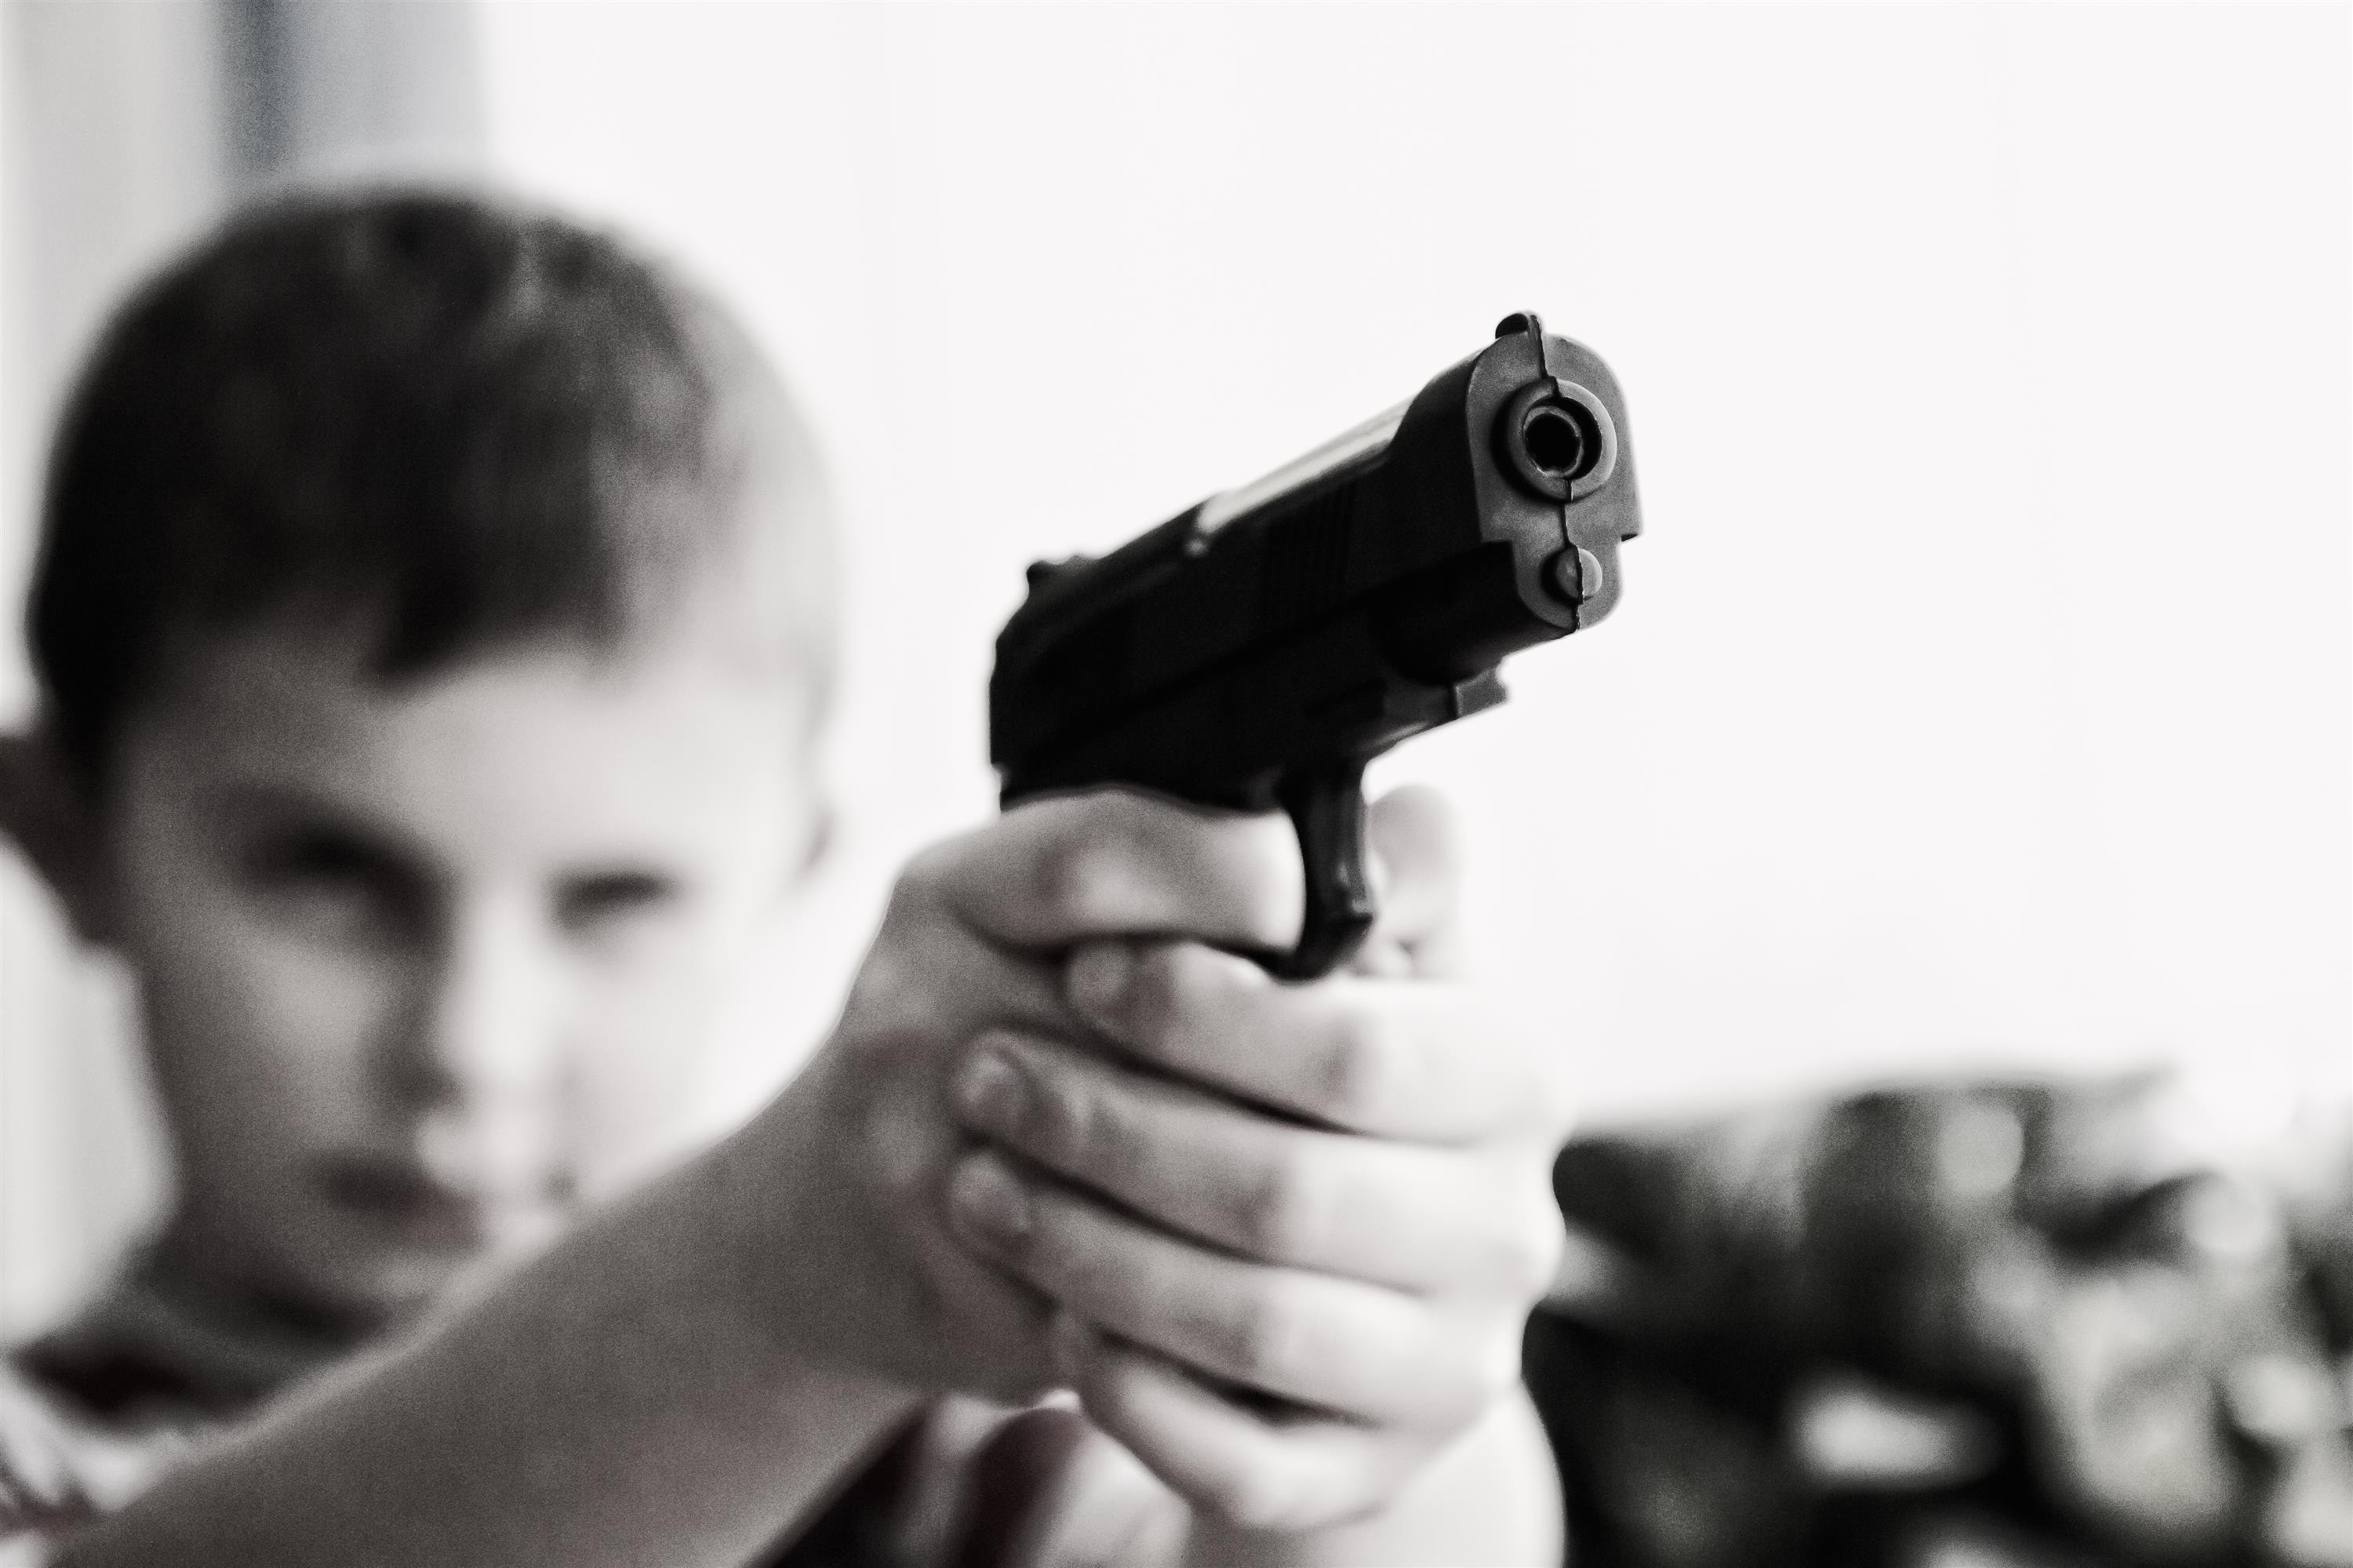 Criança apontando uma arma de brinquedo (Foto: Pixabay/Pexels)